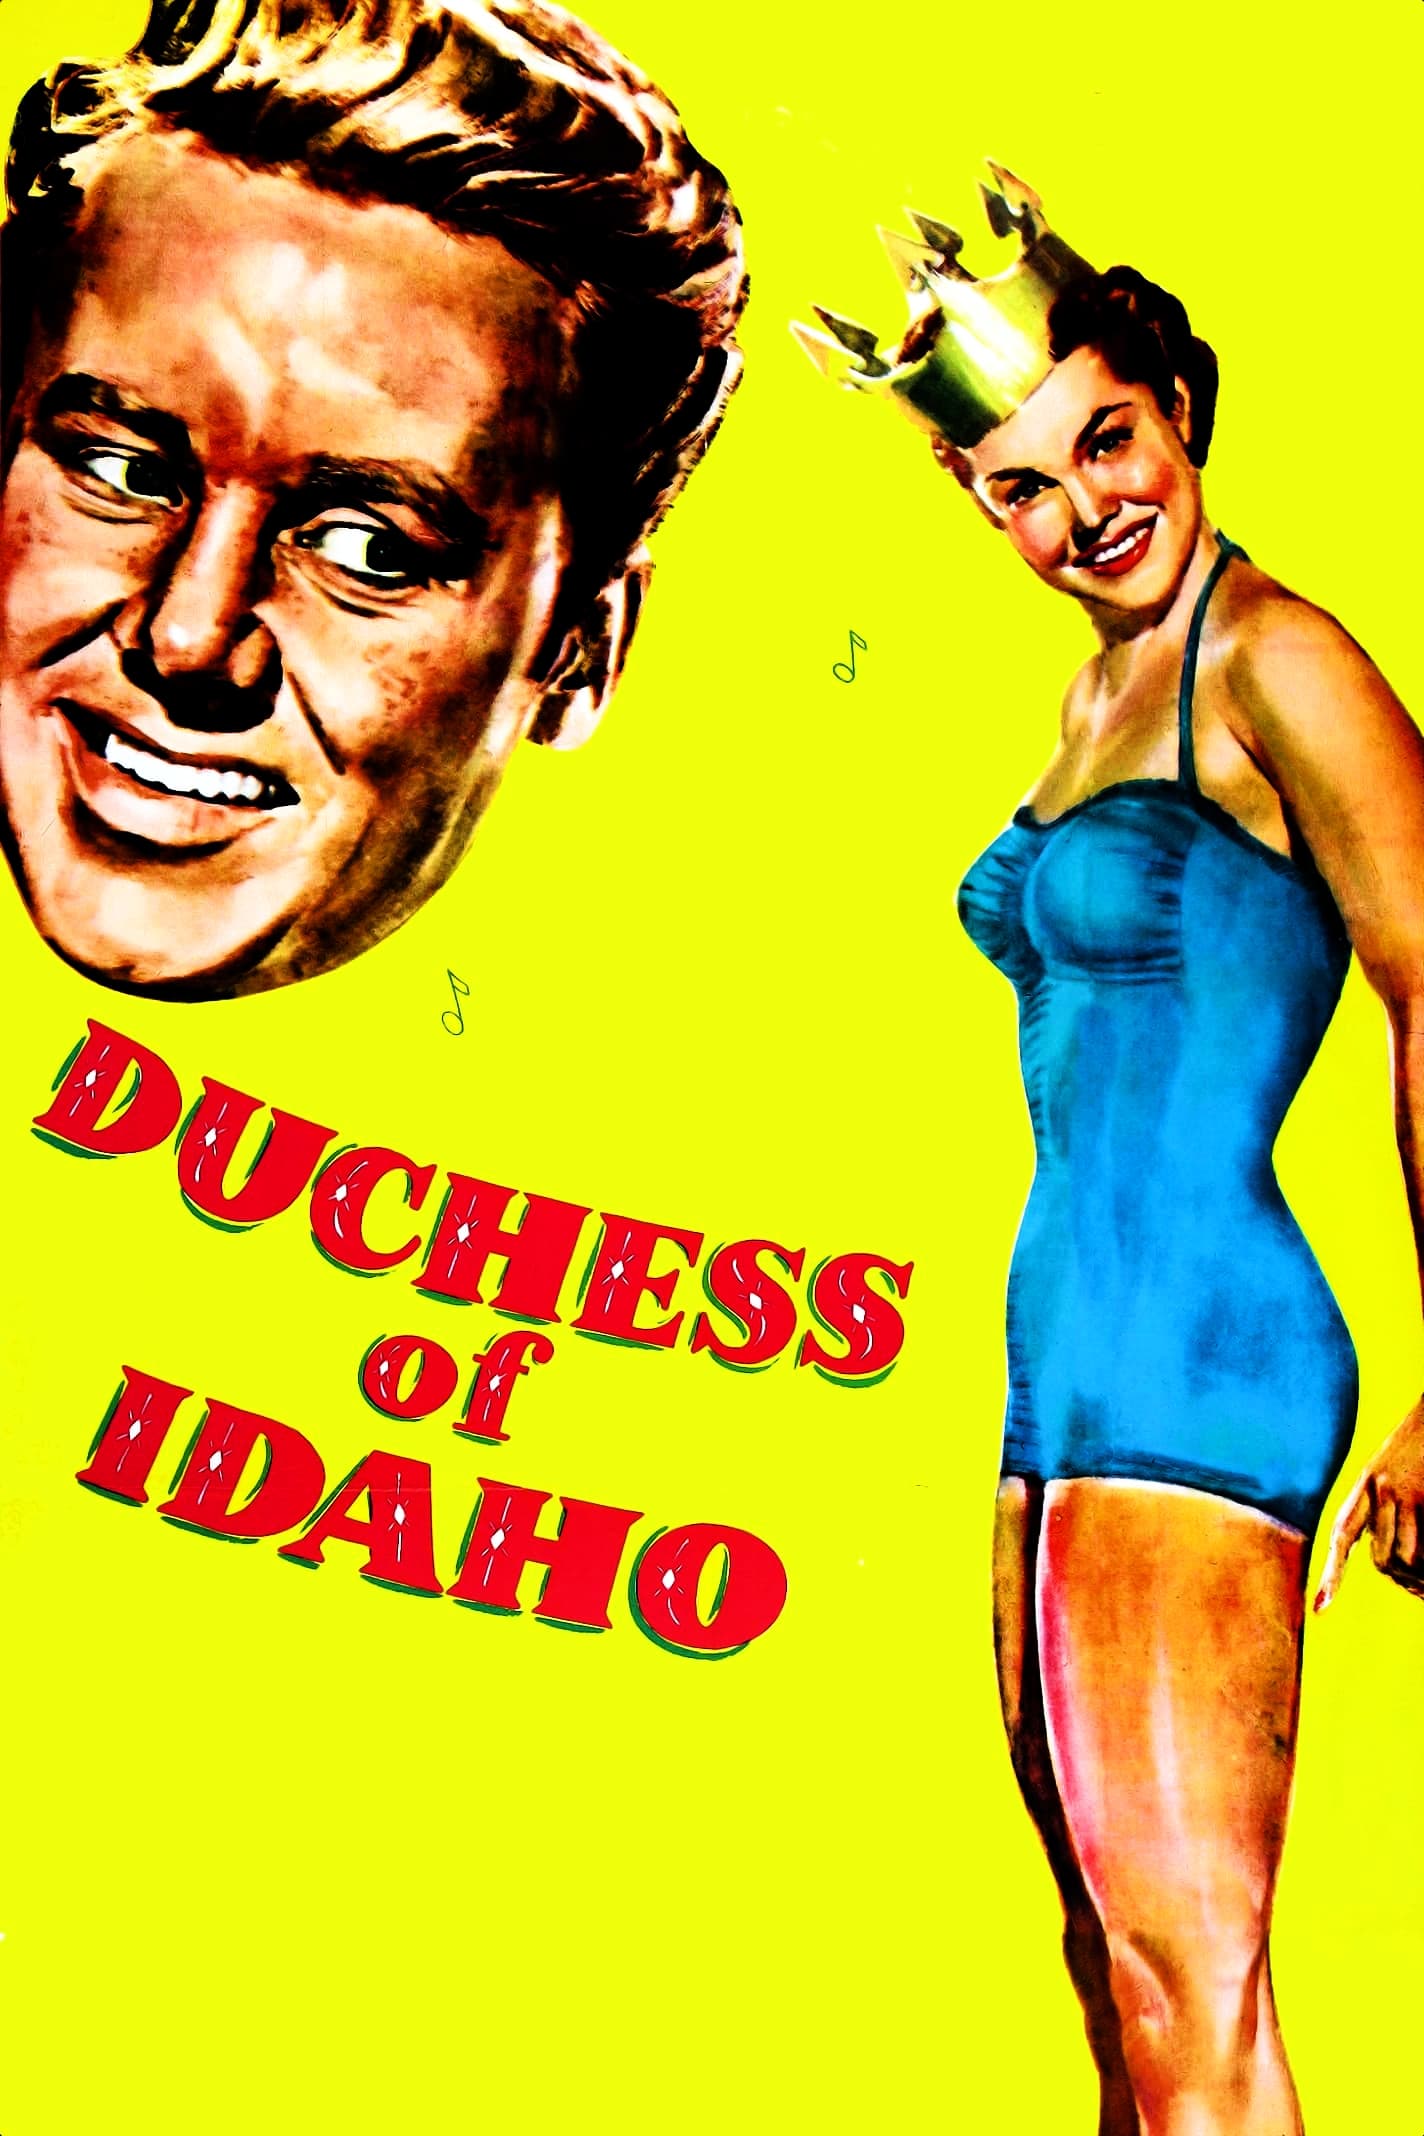 Duchess of Idaho